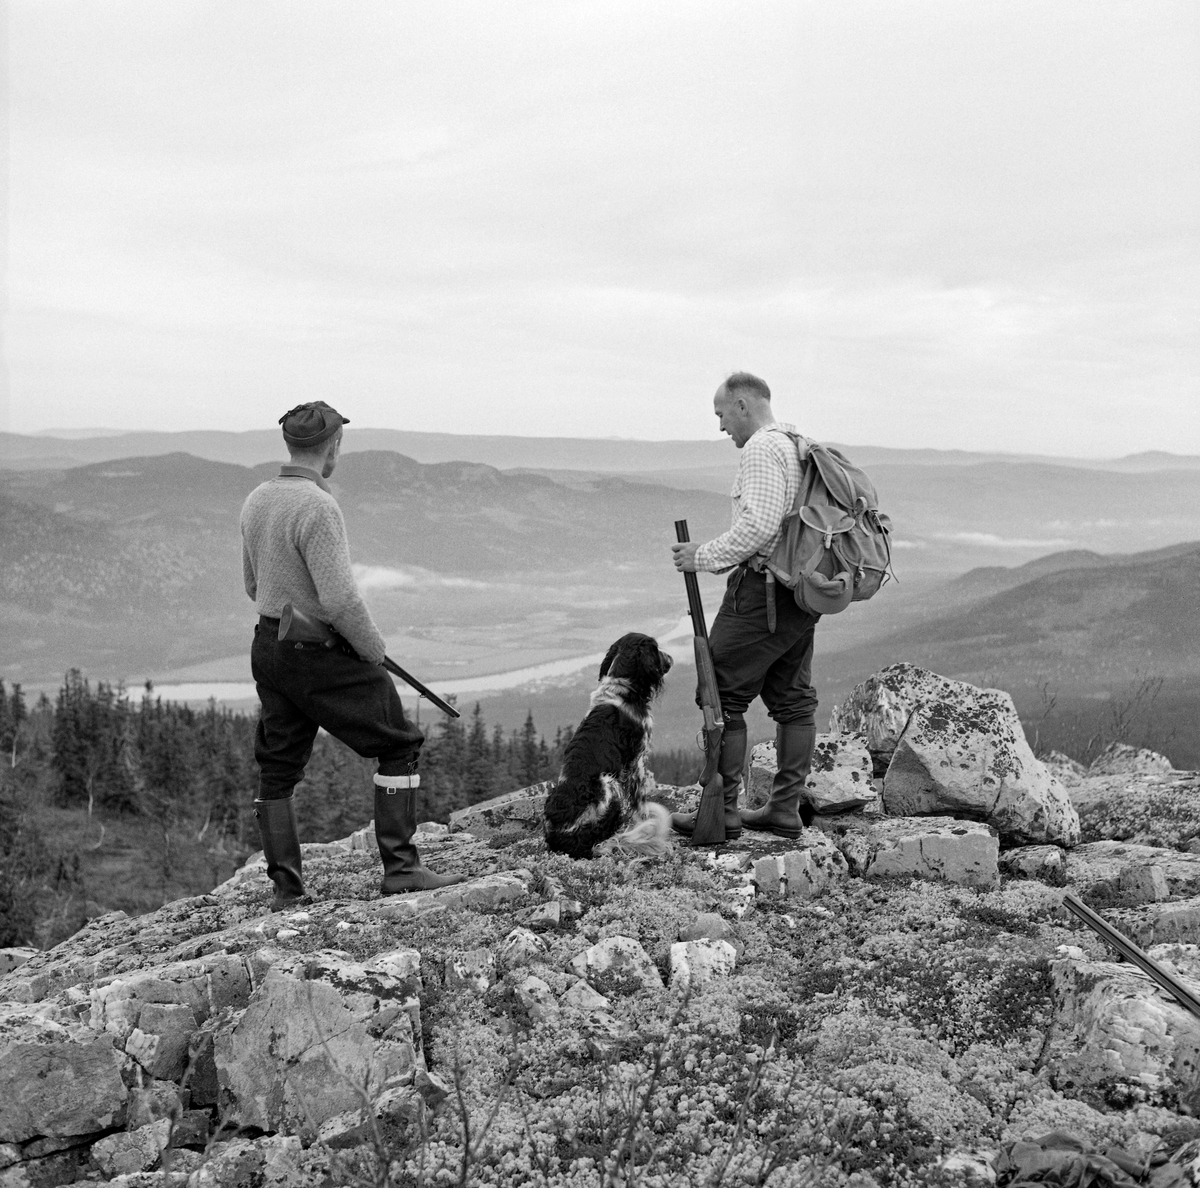 Rypejakt med fuglehund. Rypejegere på en bergknaus ved Rognvola i Stor-Elvdal høsten 1962. Jegerne er Knut (til venstre) og Finn Torp. Mellom seg har de en engelsk setter, som Finn eide. Begge karene er kledd i nikkersbukser og har gummistøvler på beina. Knut har en tynn ullgenser på overkroppen, Finn ei rutete skjorte. Han har også en tursekk på ryggen. Bak og under dem skimter vi Glomma-dalføret med elvesletta ved Evenstad og de skogkledde høydedragene på østsida av vassdraget. Fotografiet er tatt under rypejakt. 

Dette fotografiet illustrerer også at Rognvola er et fantastisk utsiktspunkt. Stedet hadde i sin tid også en skogbrannvaktstasjon som var bemannet sommerstid fram til og med 1953.